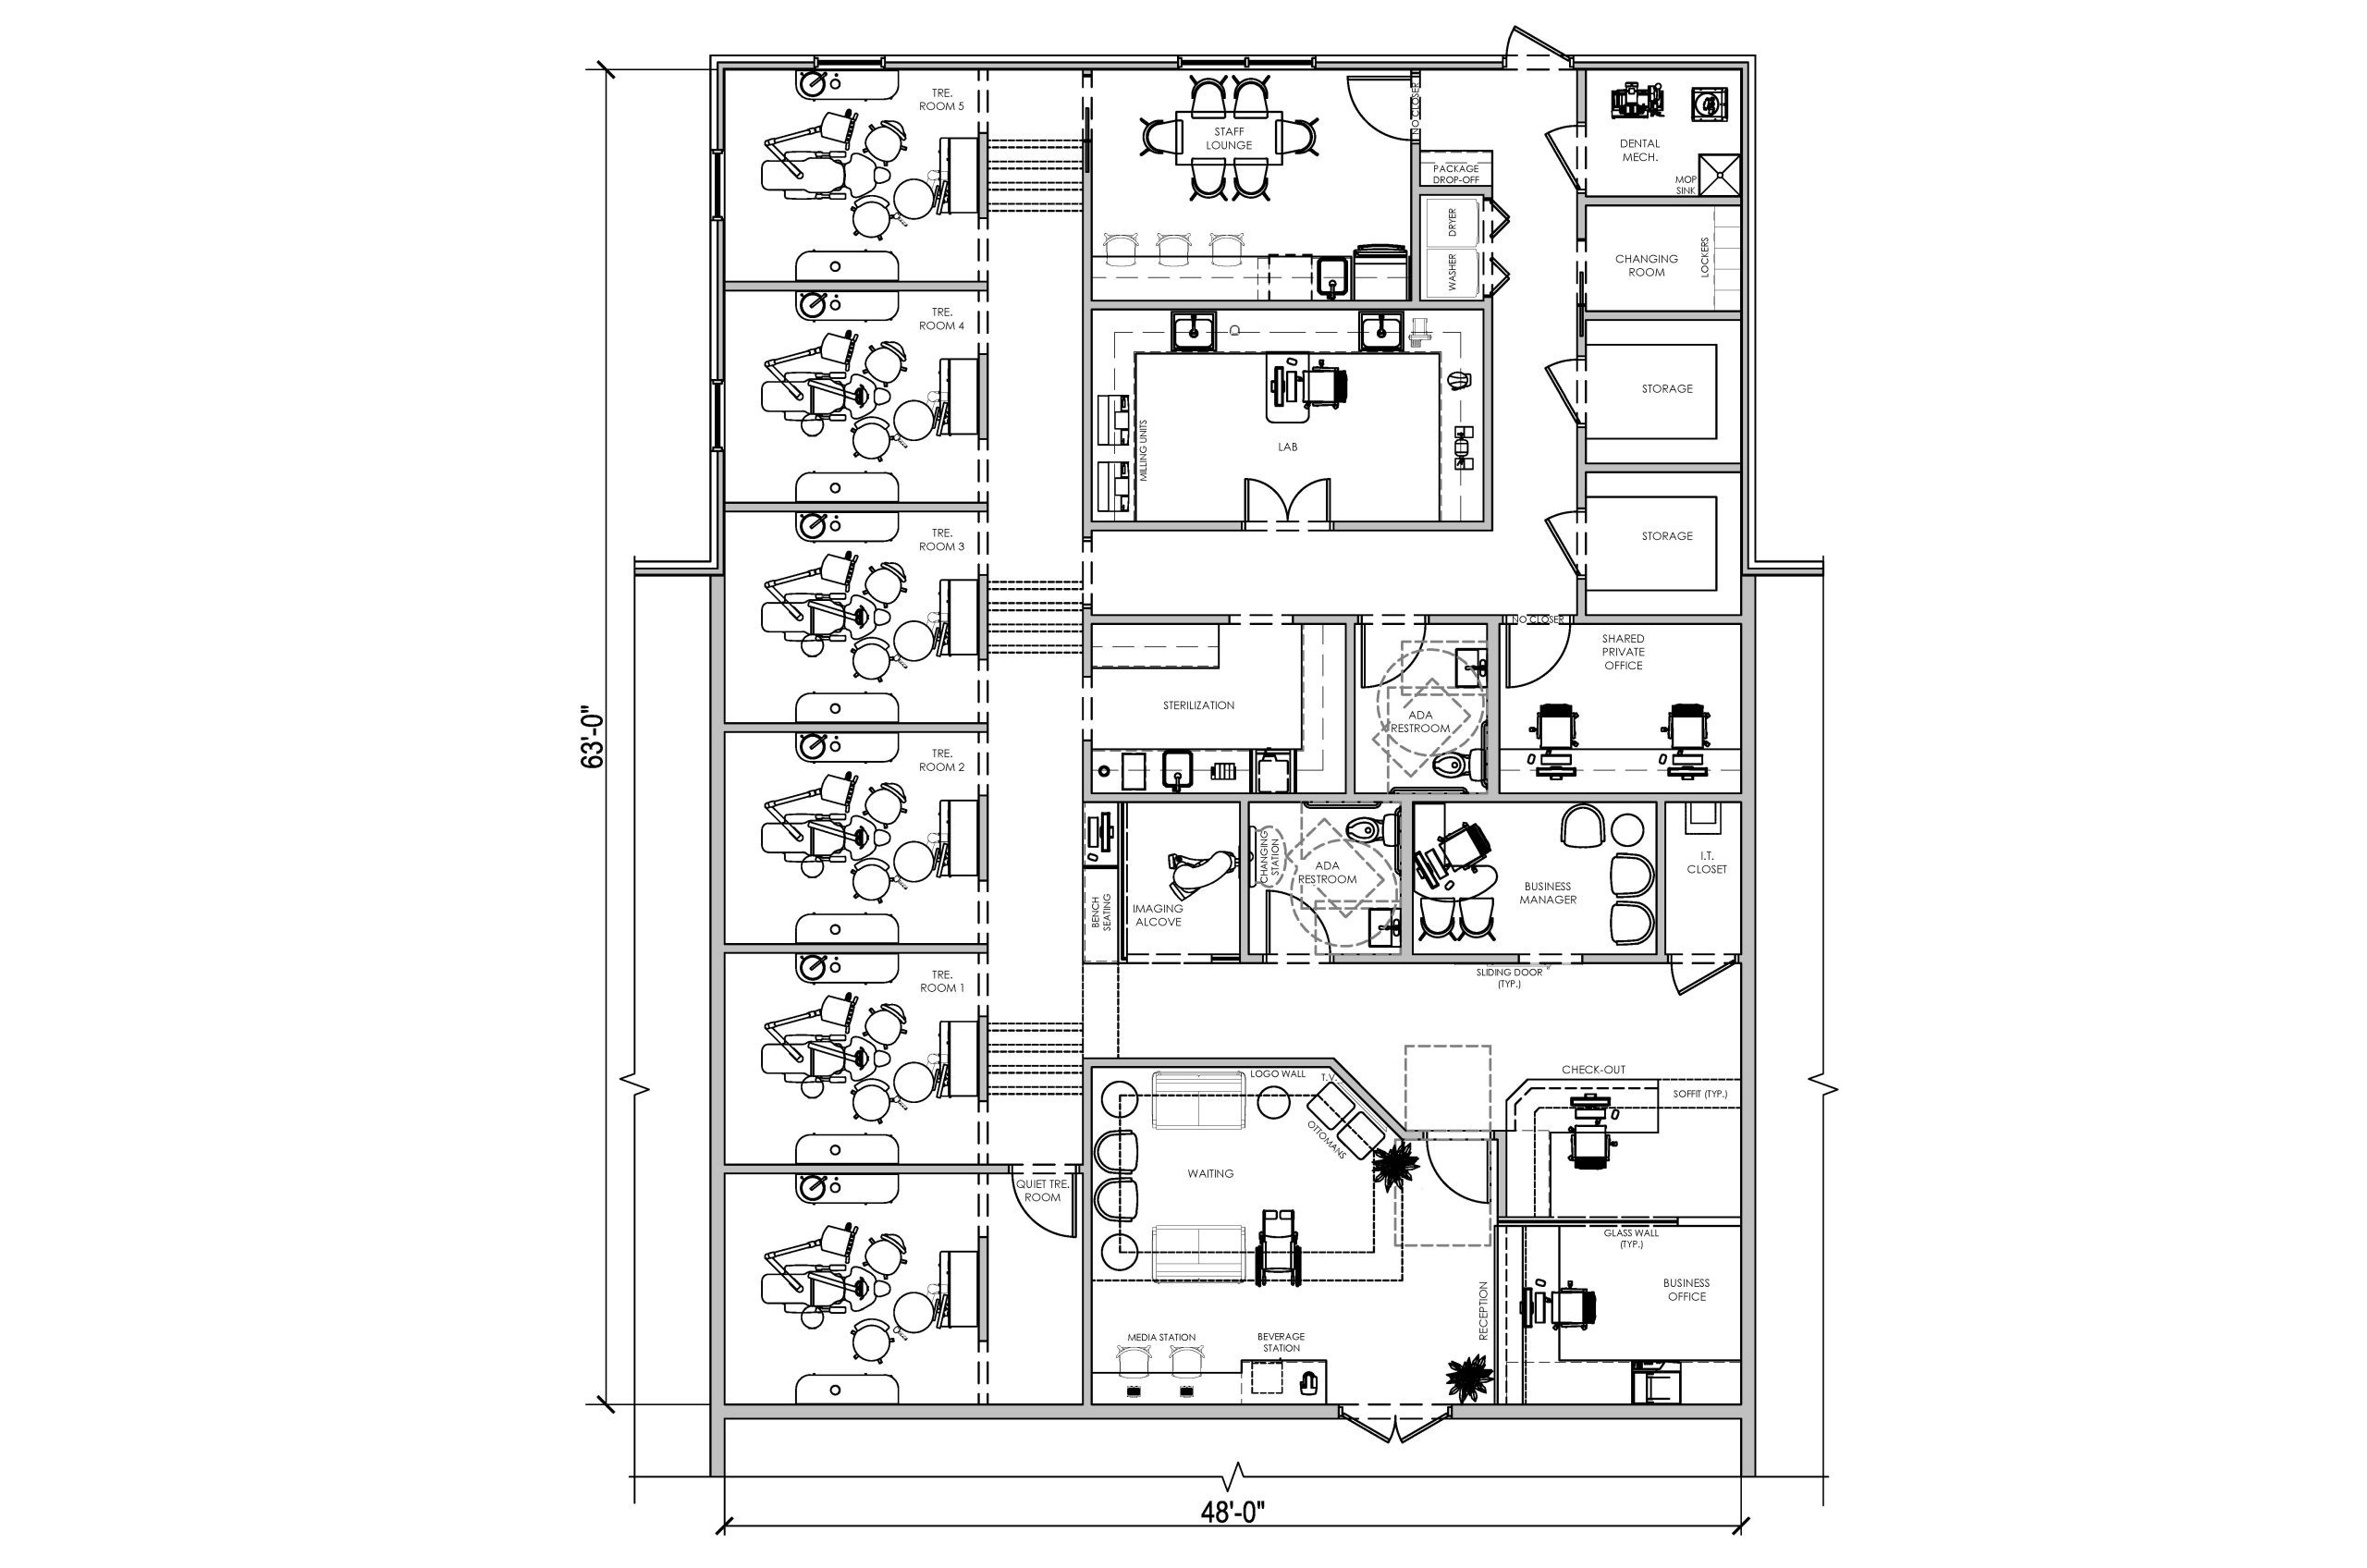 Floor Plan of Prosthodontist Office